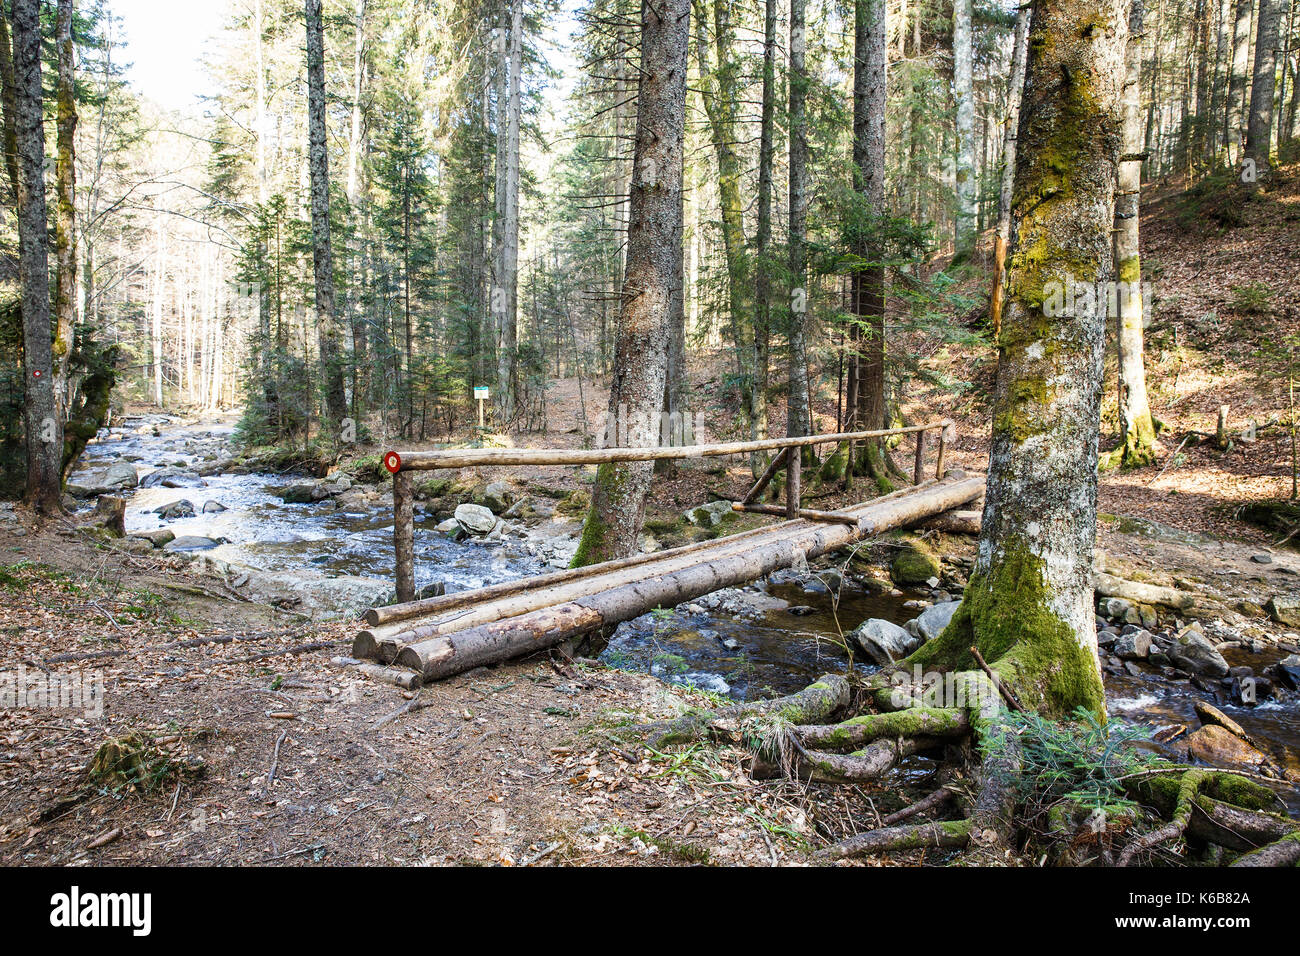 Registro de madera puente peatonal que cruza un río puro de la montaña en el bosque, con un blaze dibujado por dirección. desierto, la preservación de la naturaleza, el agua limpia y Foto de stock